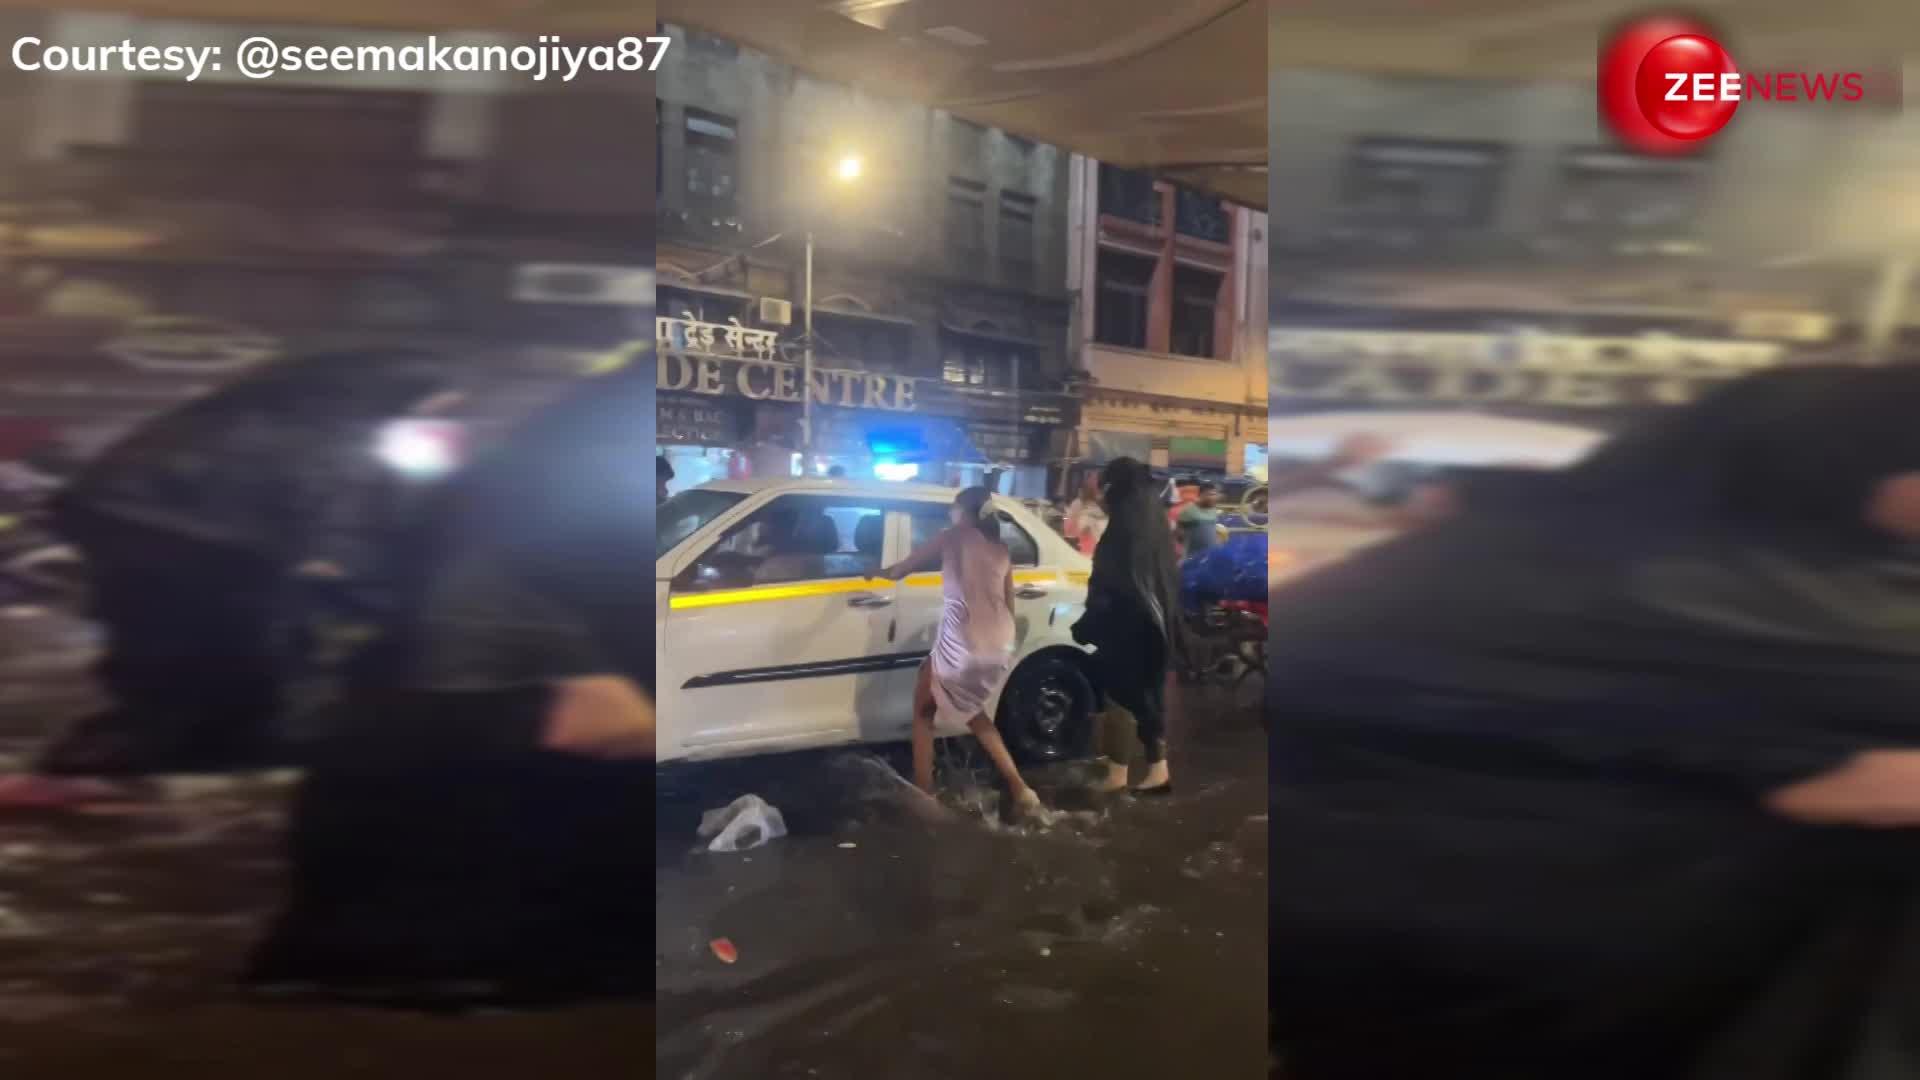 सड़क पर पानी भरा तो कूद-कूद कर डांस करने लगी 'पापा की जलपरी', Video देख लोग बोले 'ये सब करने की हिम्मत चाहिए'